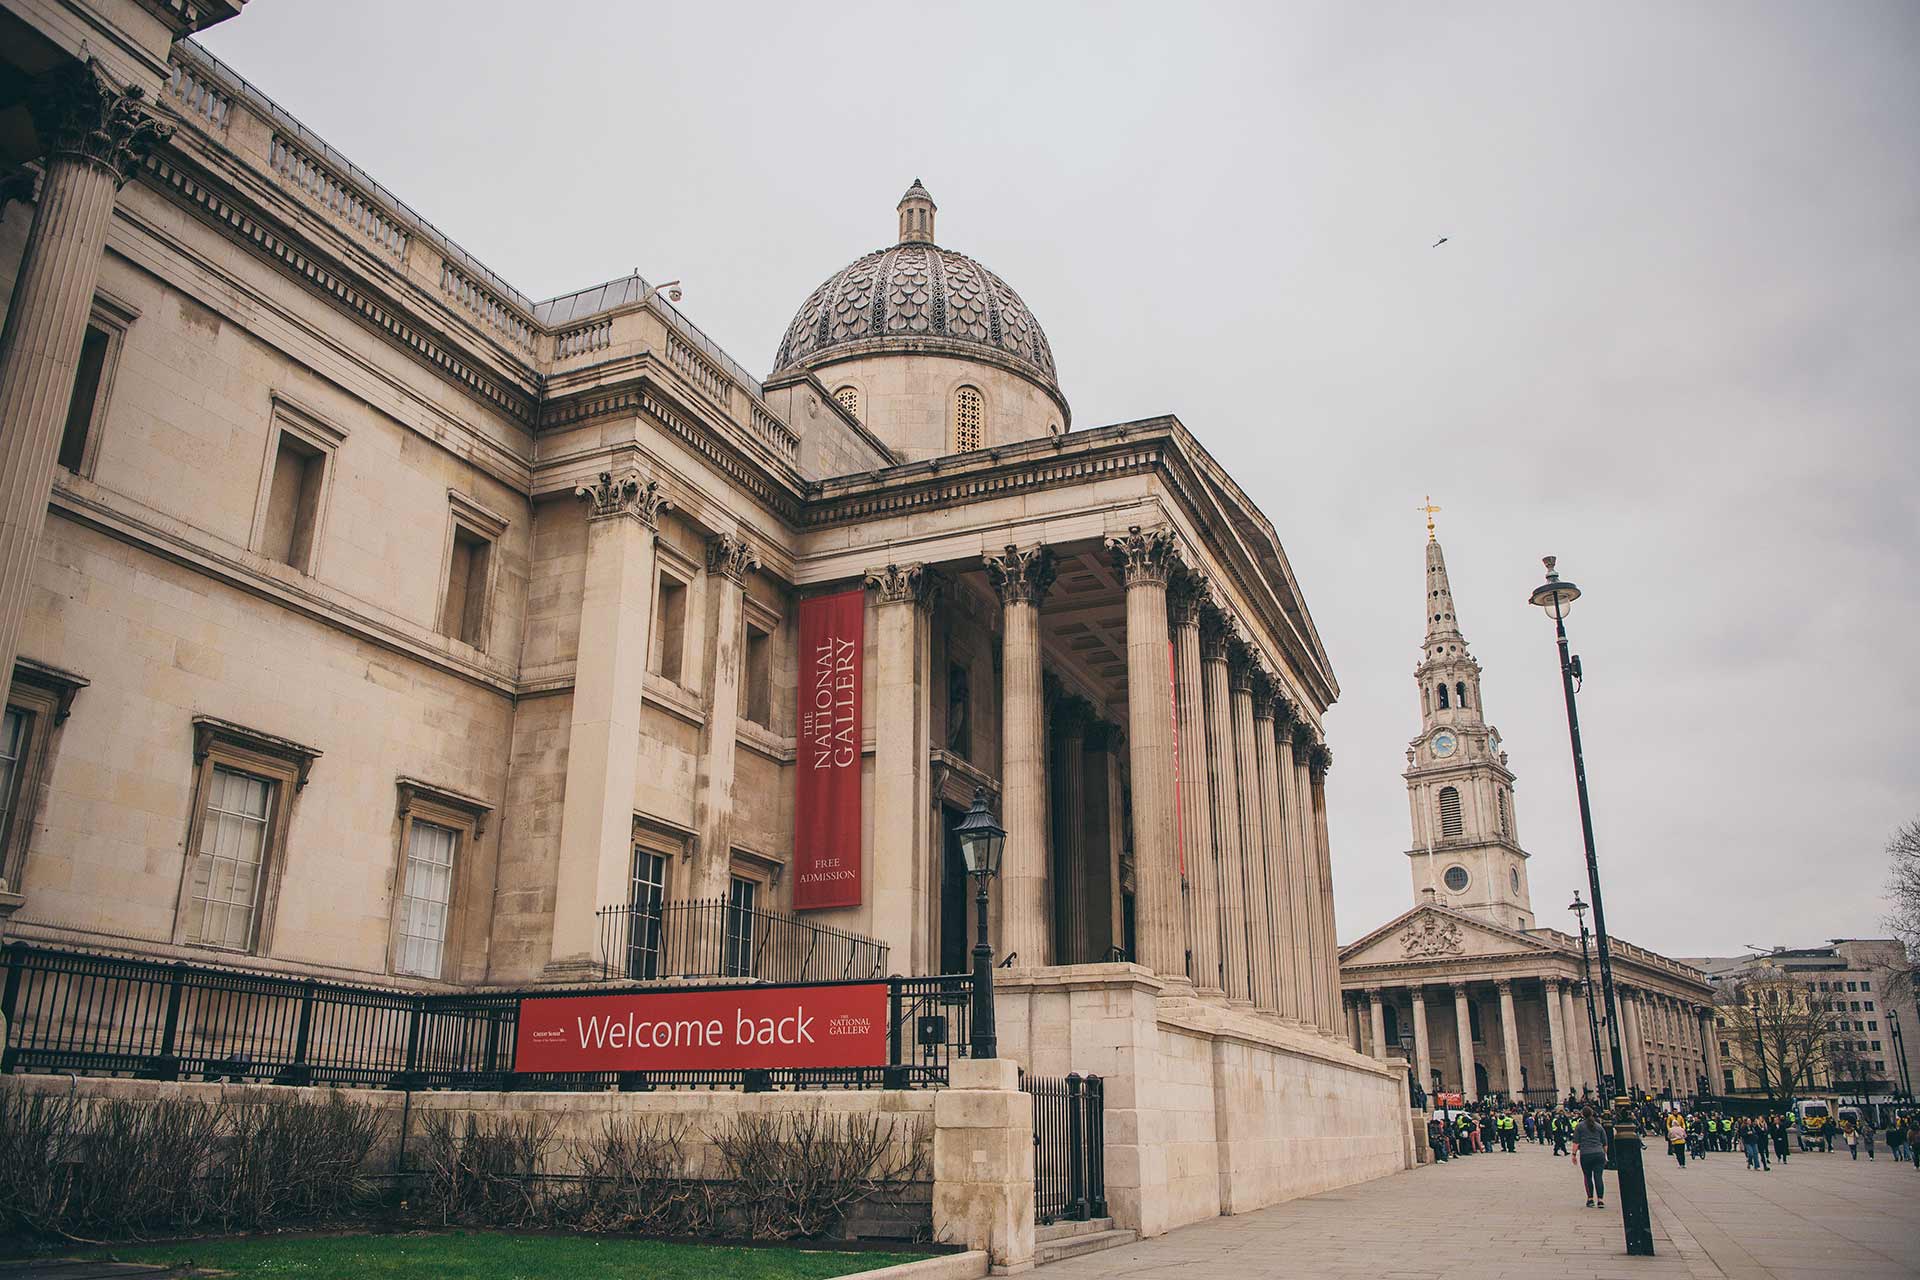 Of anders hotel nationale vlag Gratis musea in Londen: deze 10 museums in Londen kun je gratis bezoeken |  WAT ZIJ ZEGT